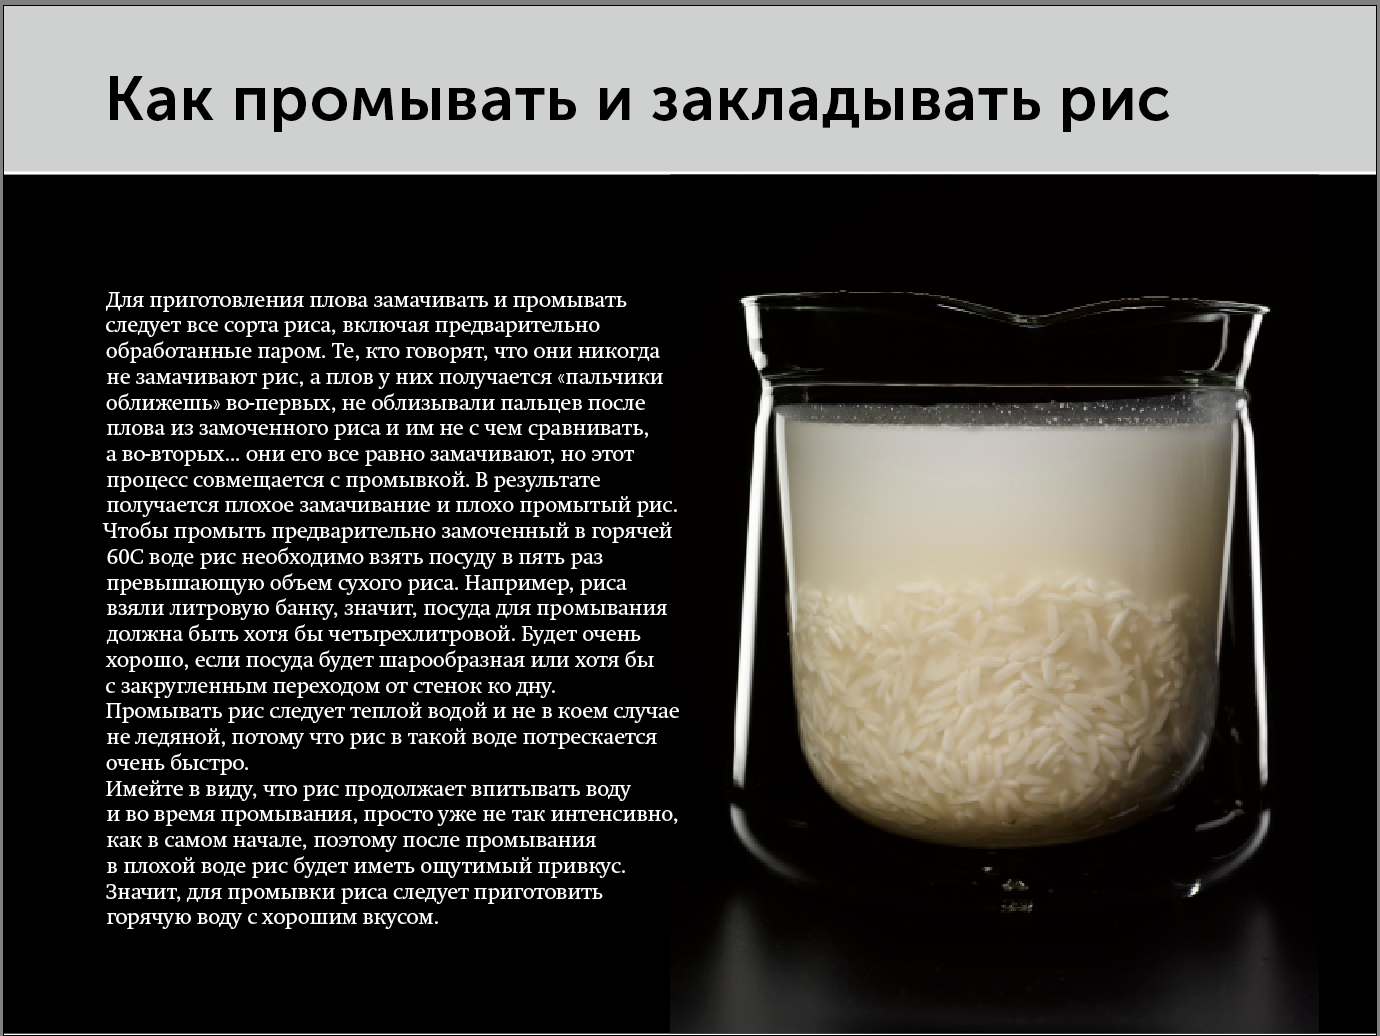 Для чего нужно есть рис. Соотношение риса и воды для плова. Порции риса и воды для плова. Соотношение воды и риса в плове в стаканах. Рис пропорции воды и риса для плова.